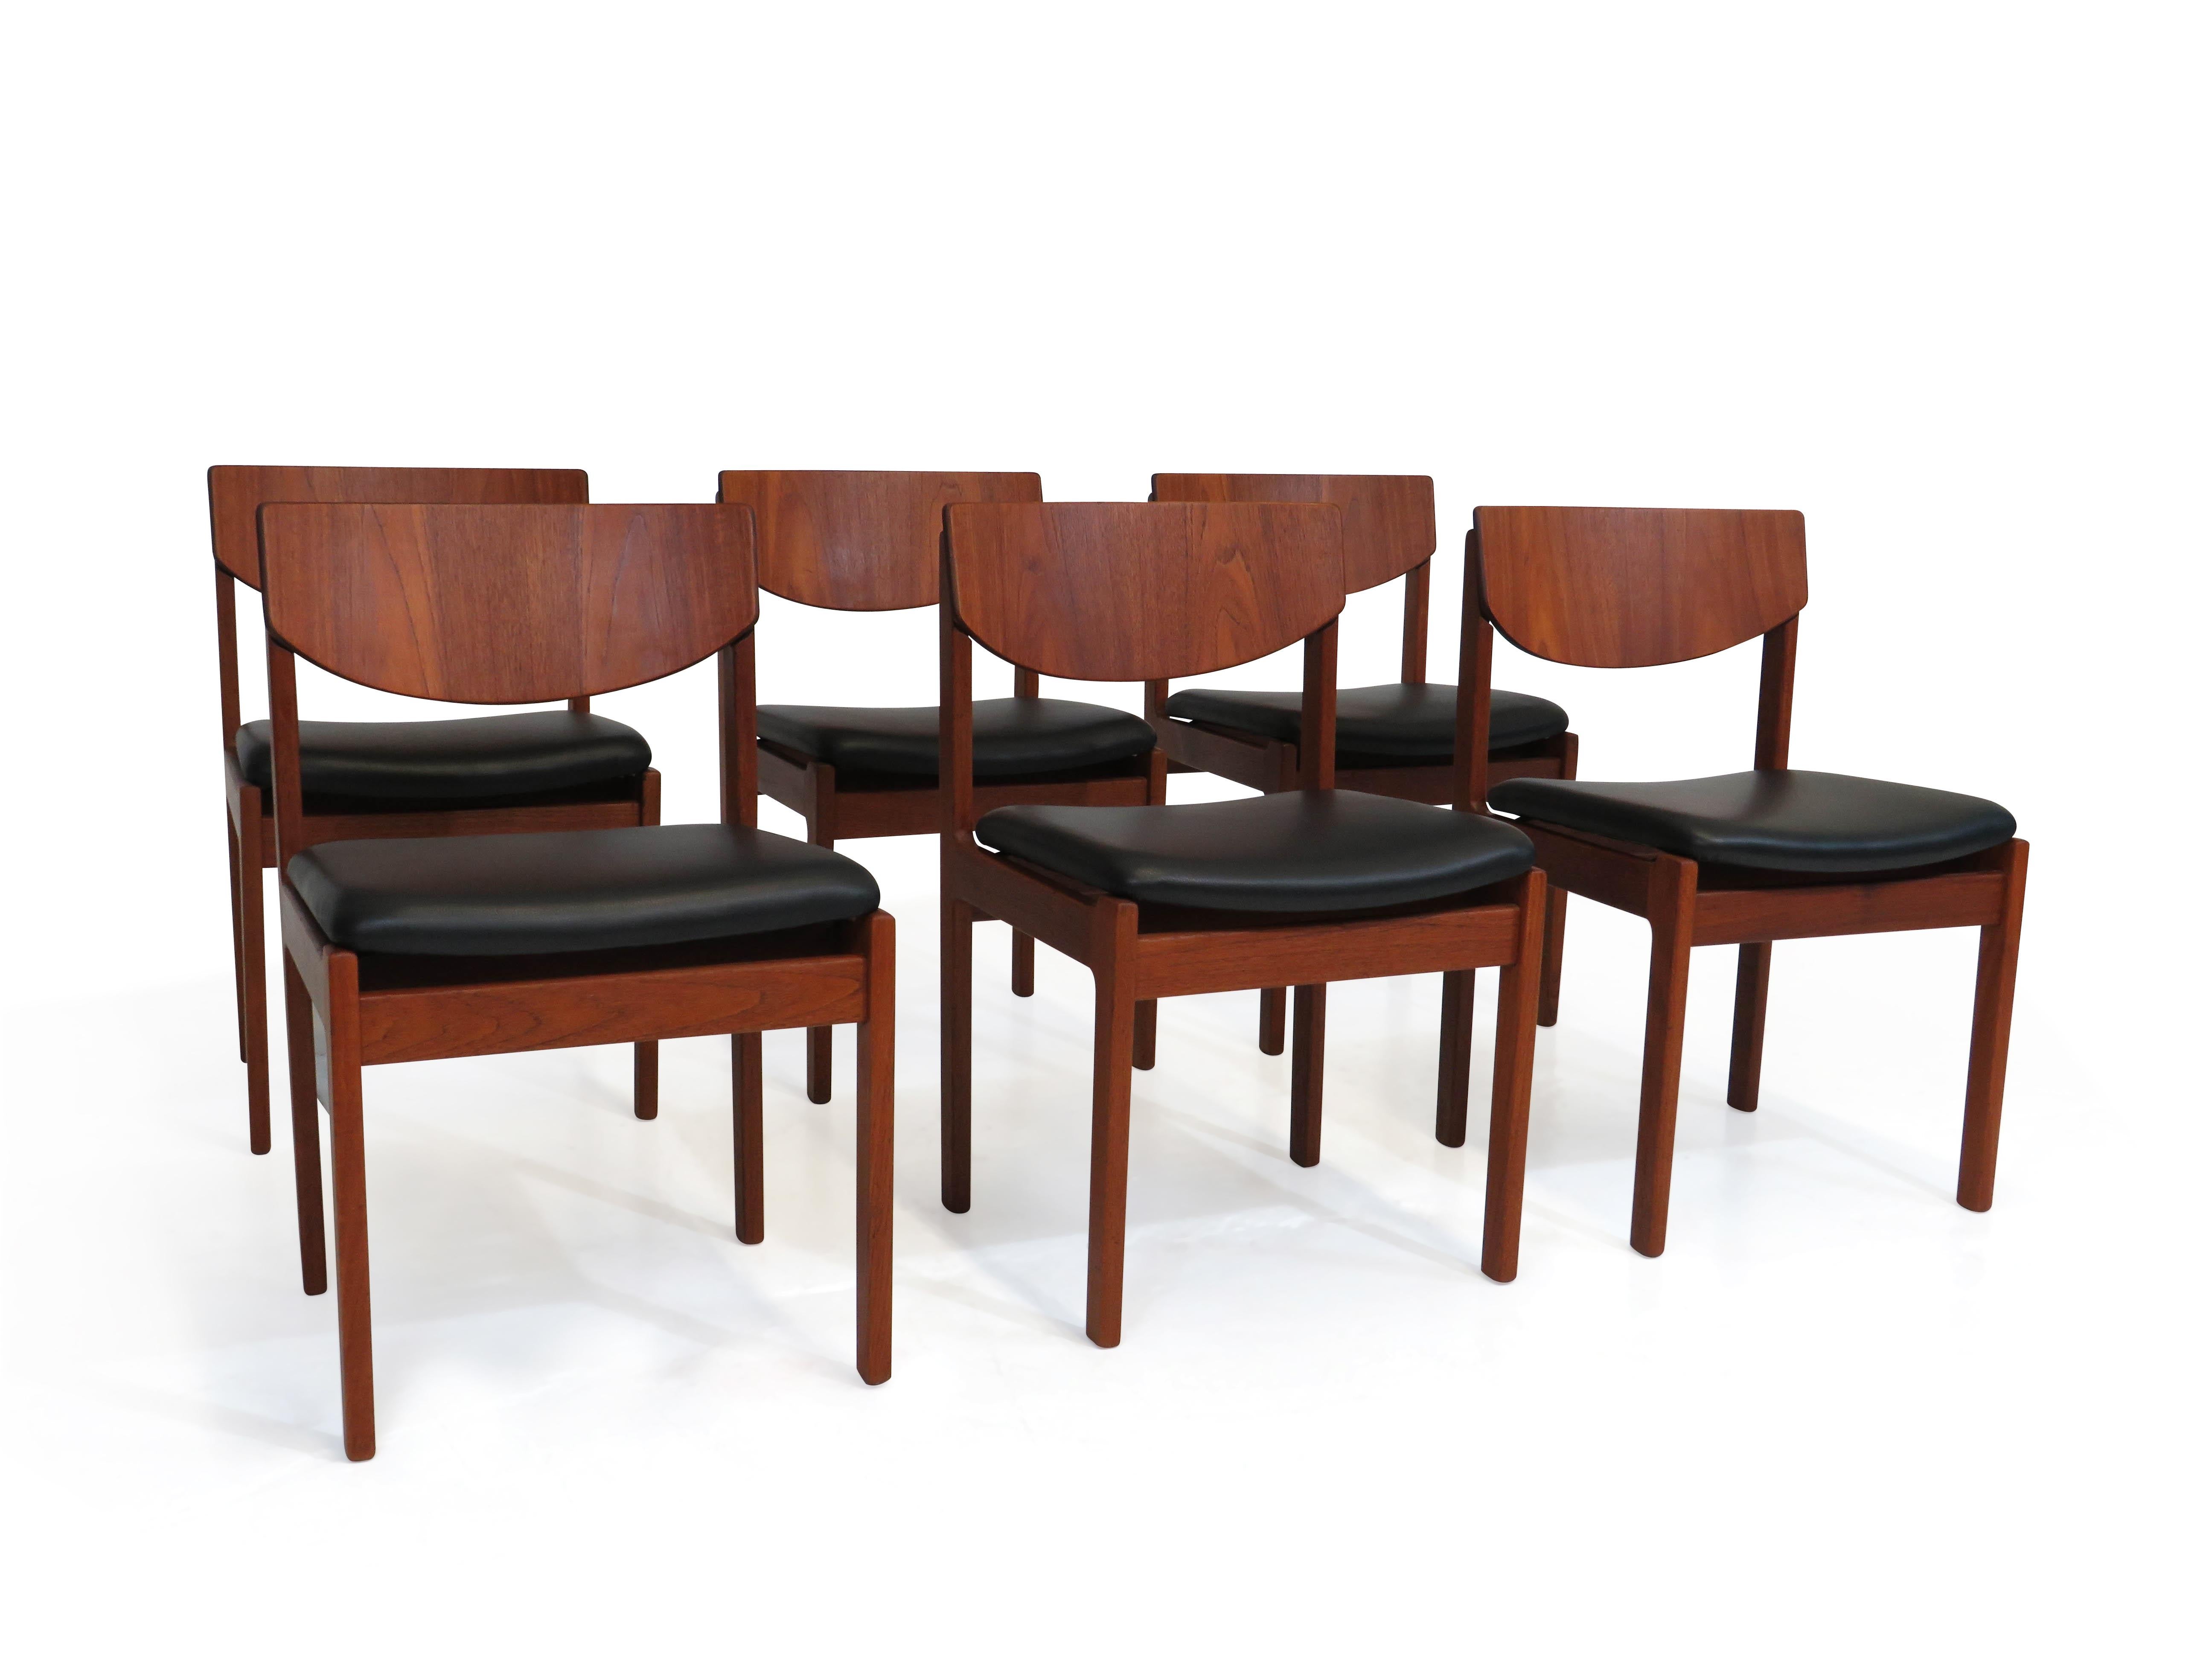 Six fauteuils de salle à manger du milieu du siècle, fabriqués en teck massif ancien, avec une menuiserie robuste, un dossier incurvé confortable et des sièges nouvellement rembourrés en cuir noir. Fabriqué au Danemark au début des années 1960. Le